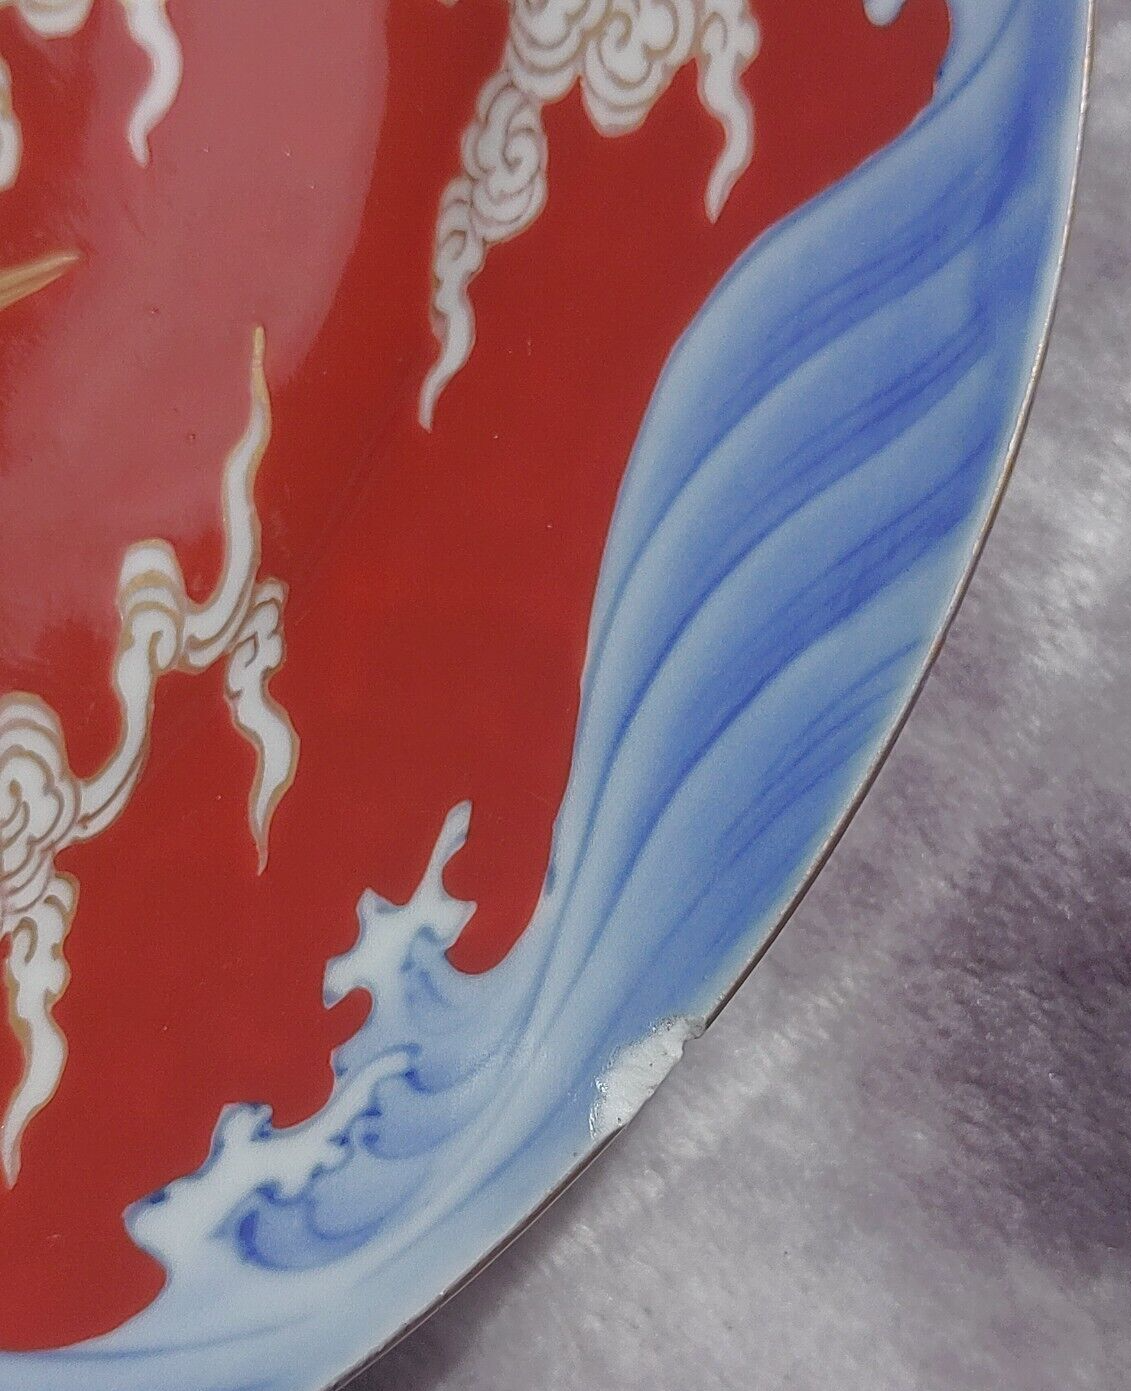 Antique Japanese Meiji Period Fukagawa Seiji Arita Crane Ceramic Plate 24 cm